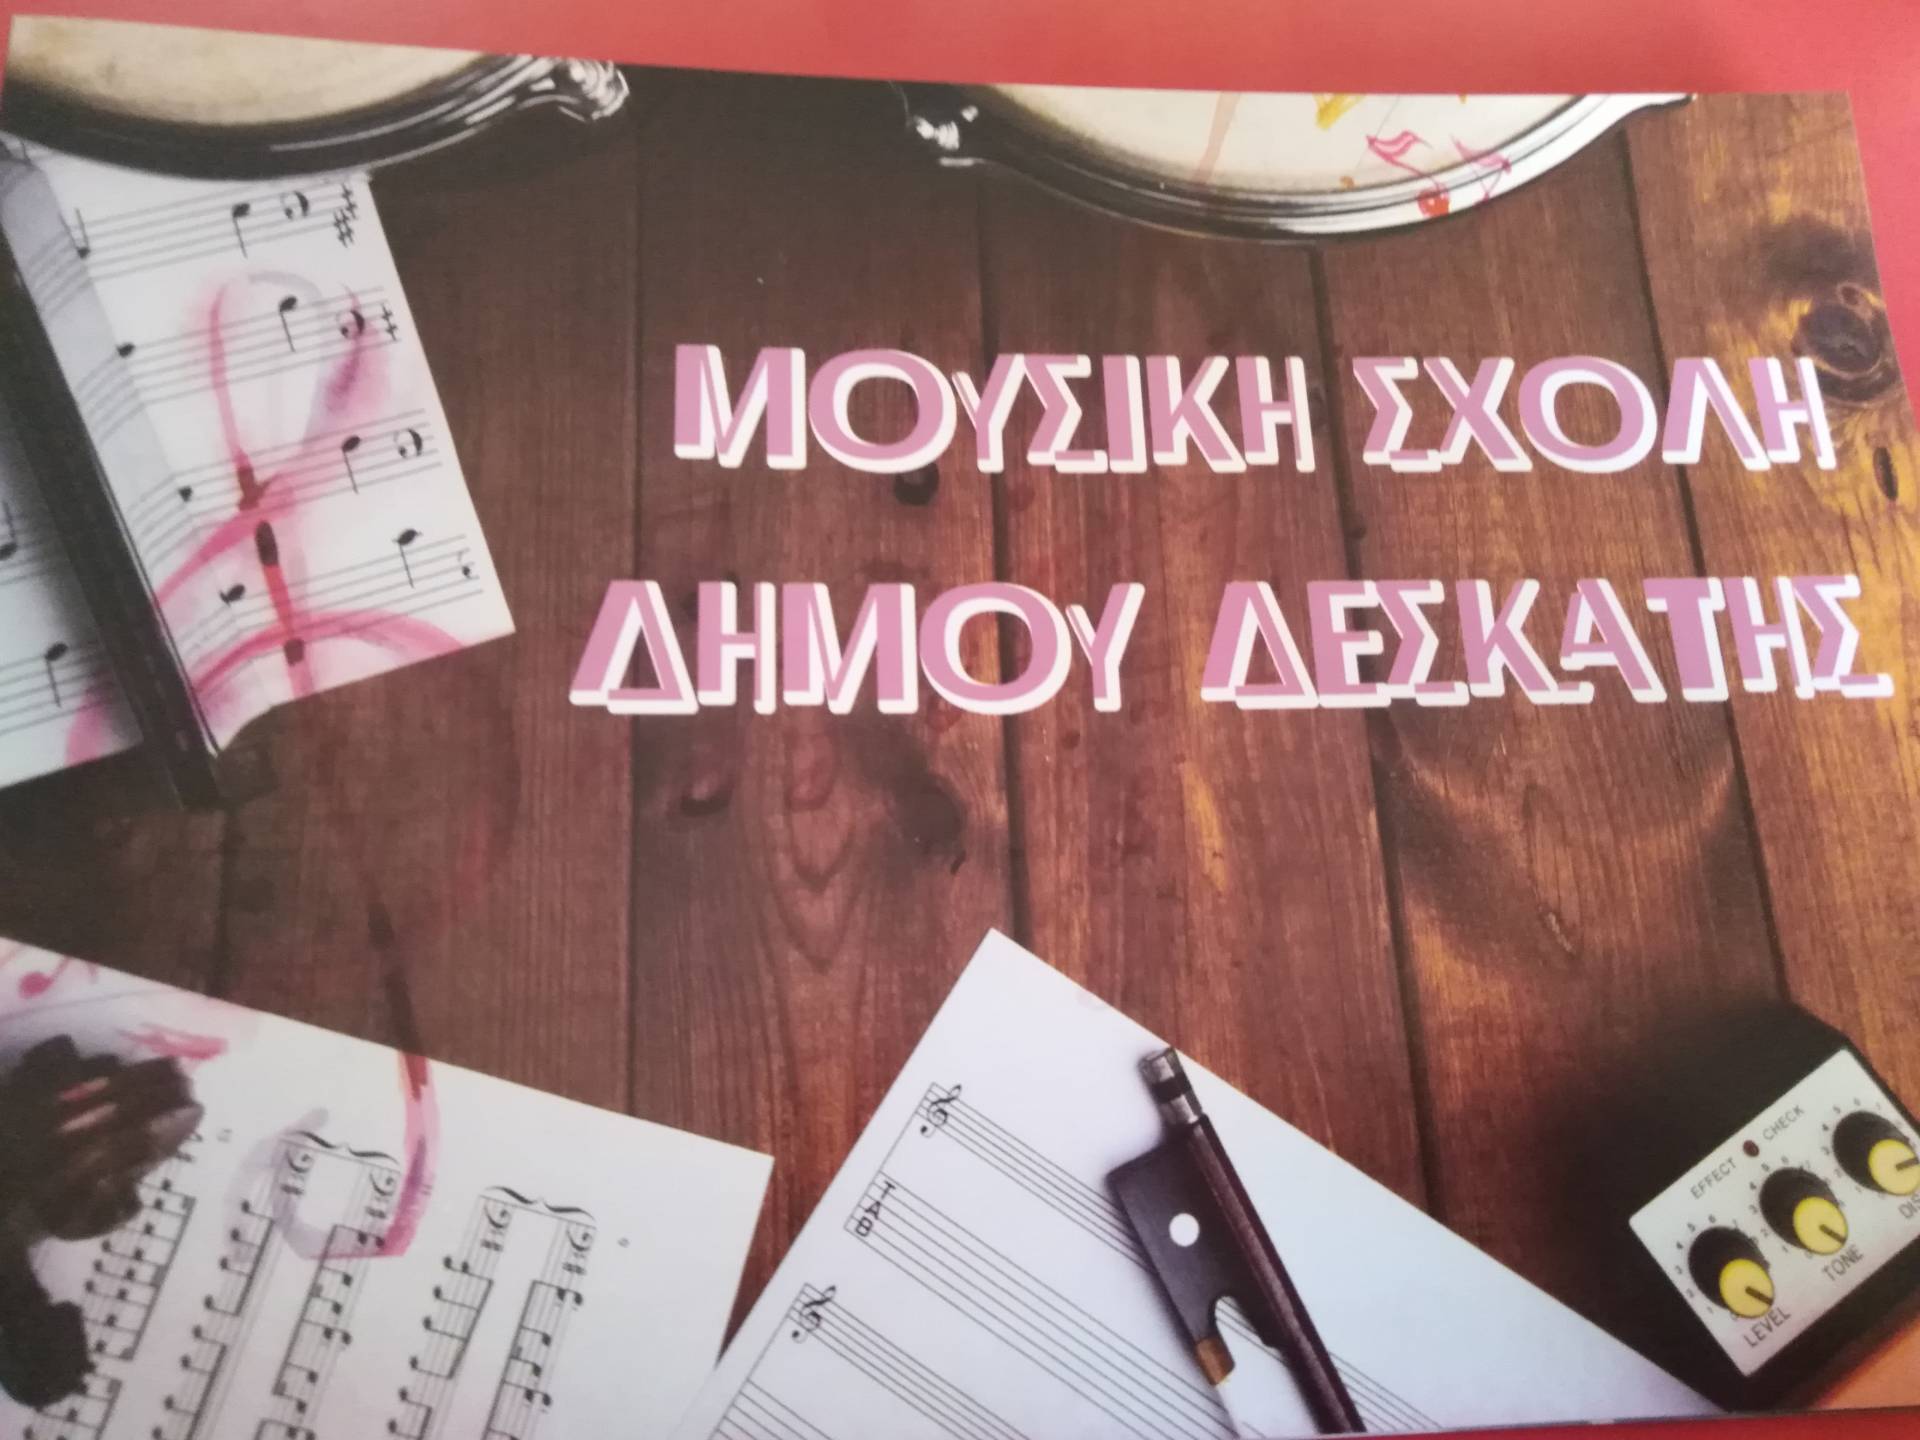 Δήμος Δεσκάτης: Ανακοίνωση για τα ωδεία και τις μουσικές σχολές